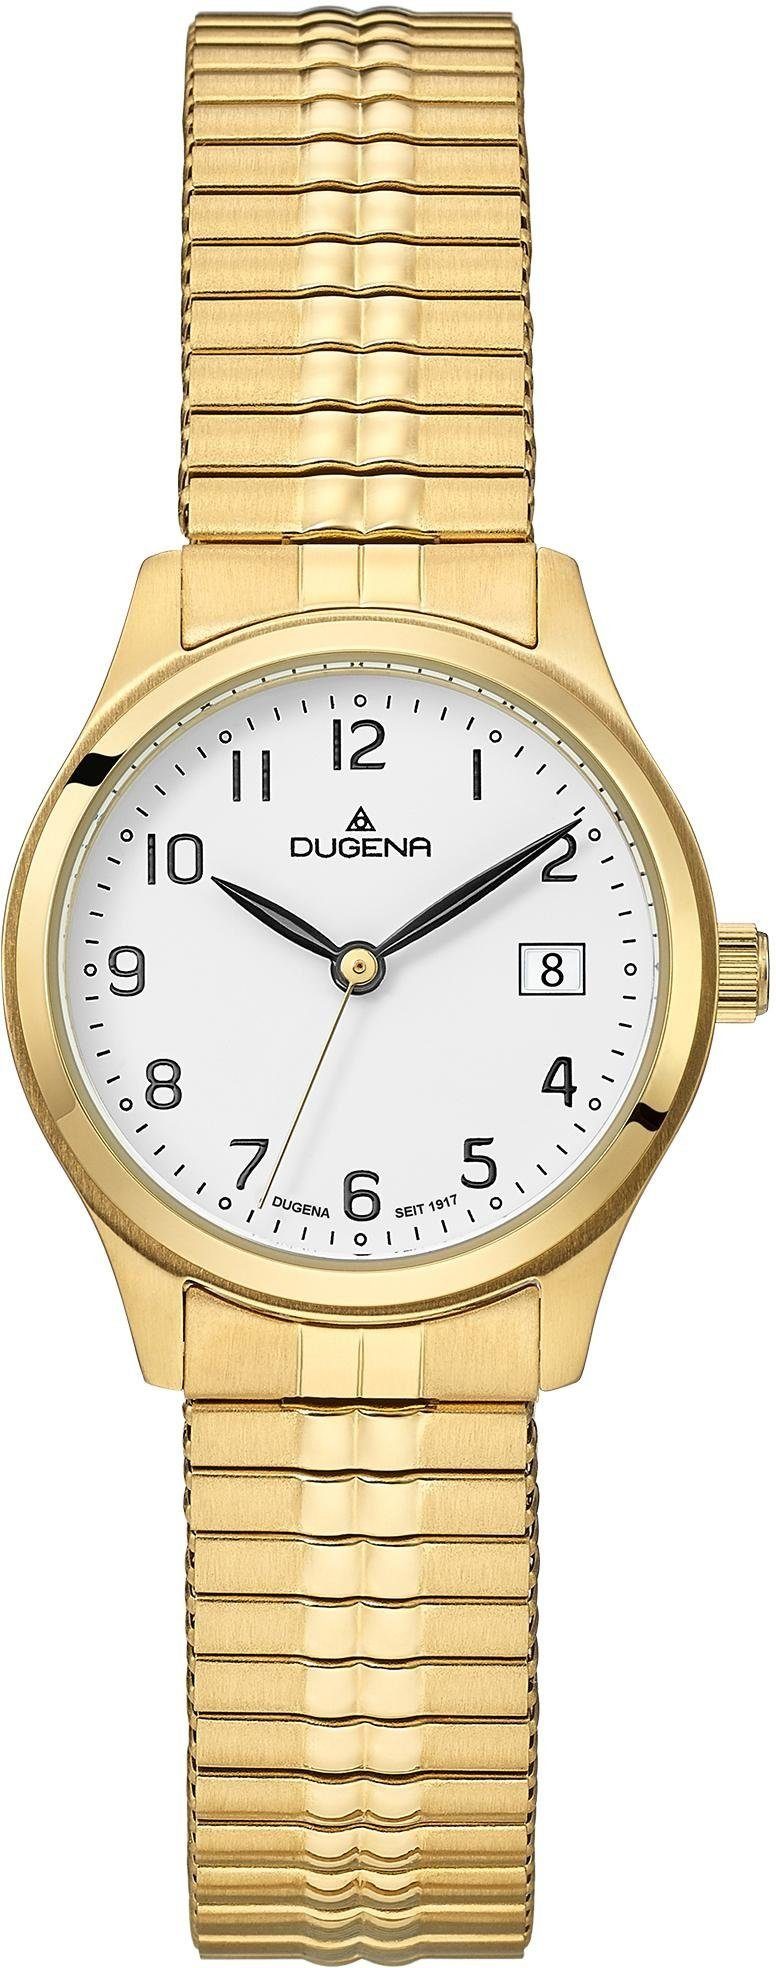 Dugena Quarzuhr Bari, 4460758-1, Armbanduhr, Damenuhr, Datum